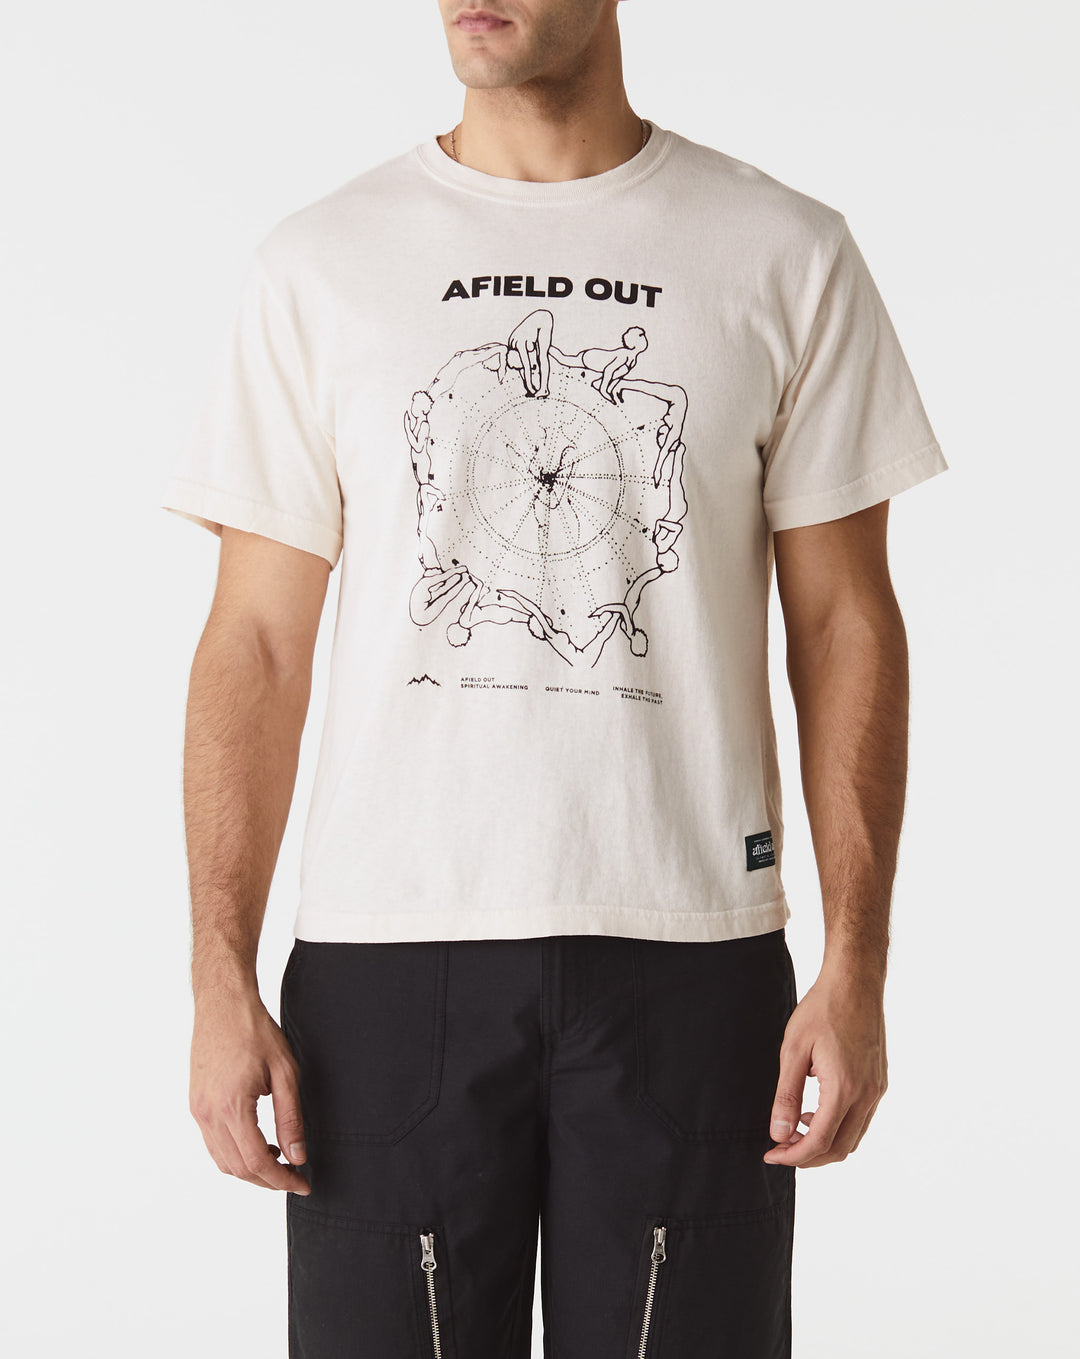 Afield Out Flow T-Shirt  - XHIBITION